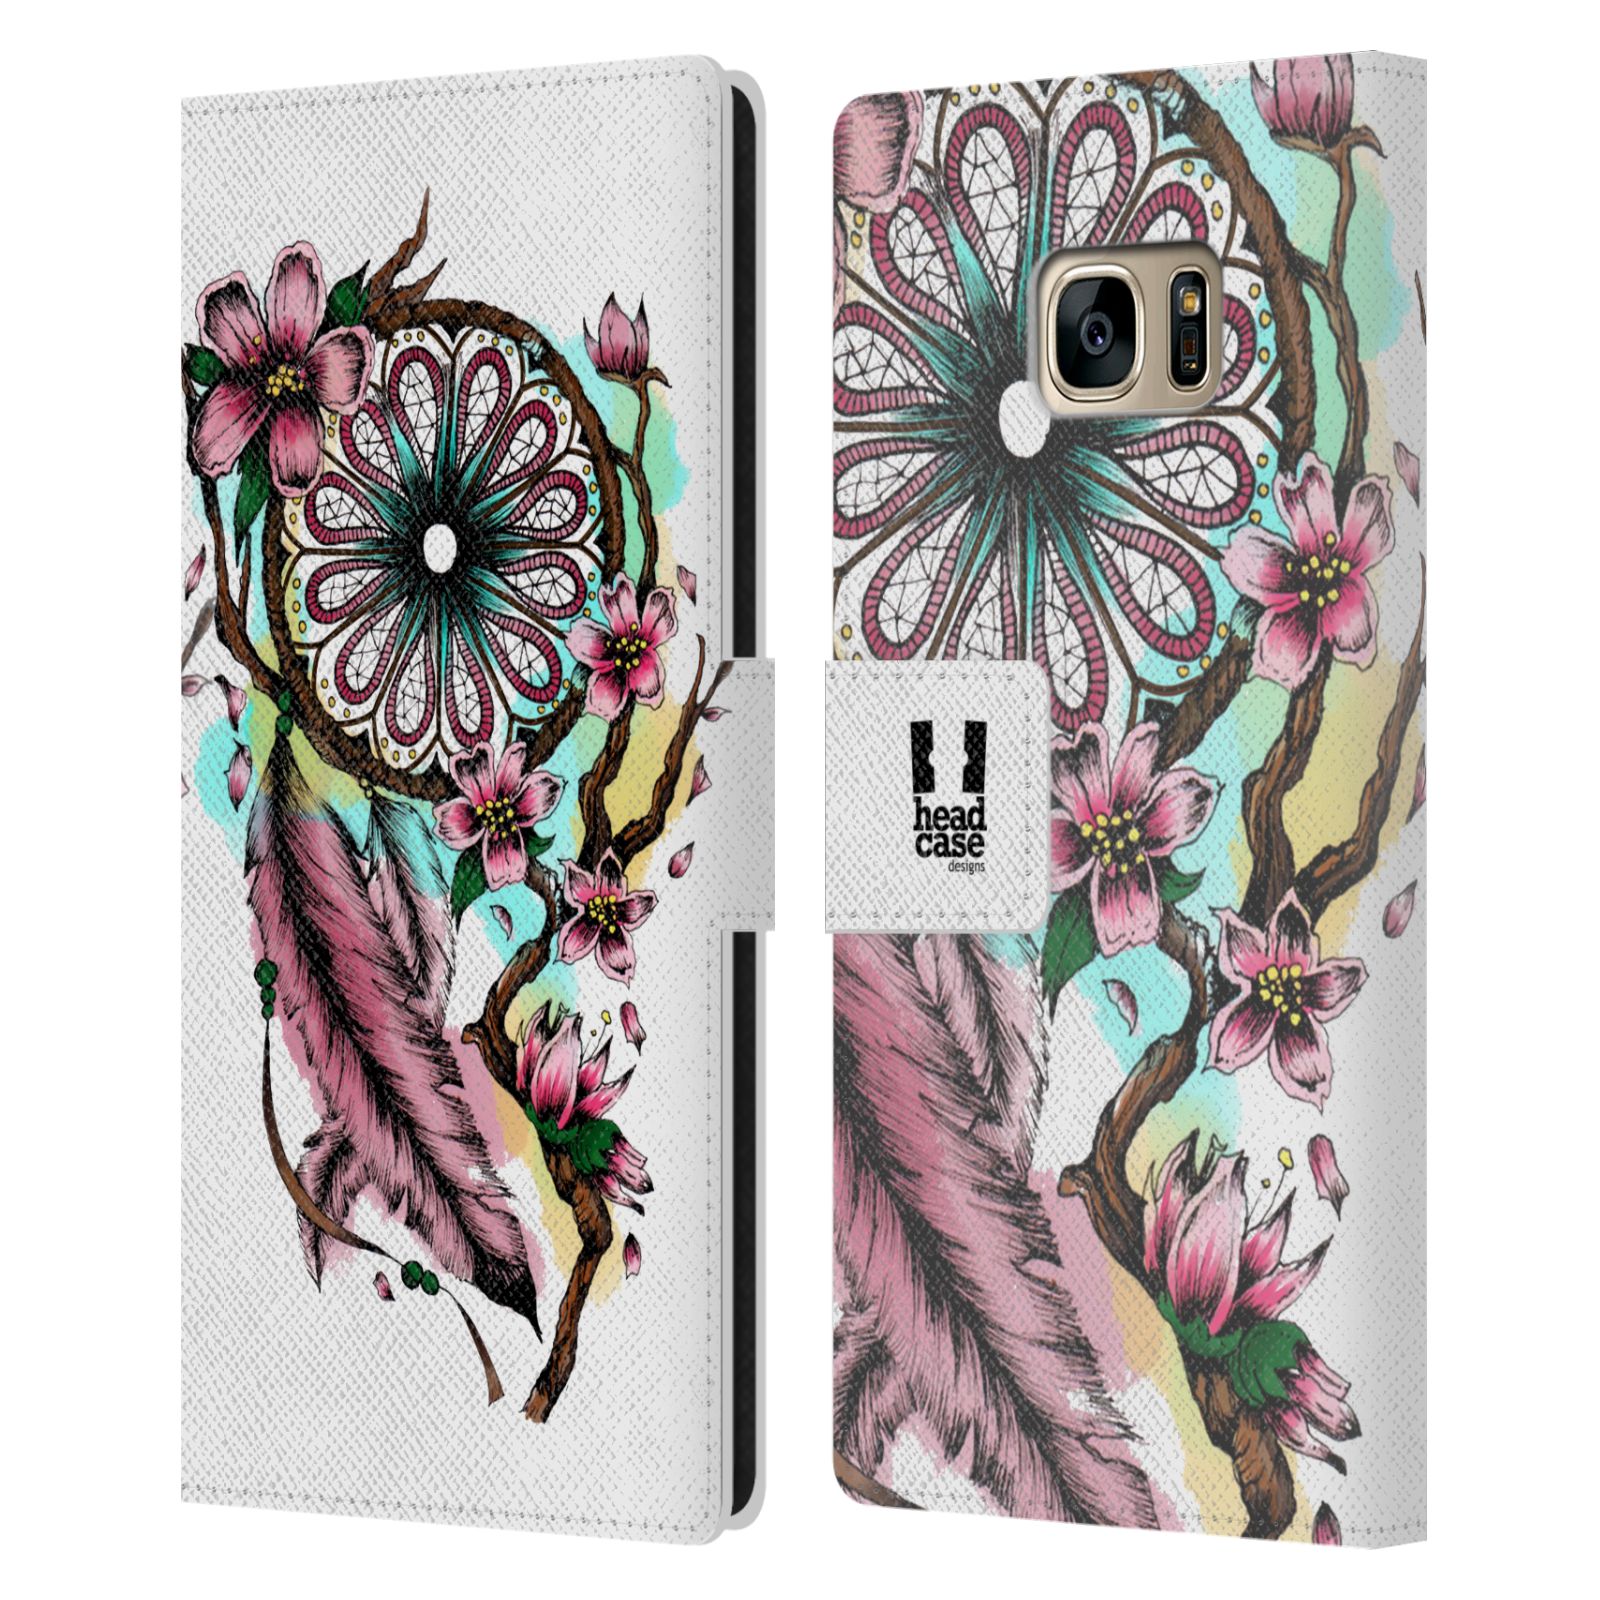 Pouzdro pro mobil Samsung Galaxy S7 EDGE - Květinový vzor lapač snů